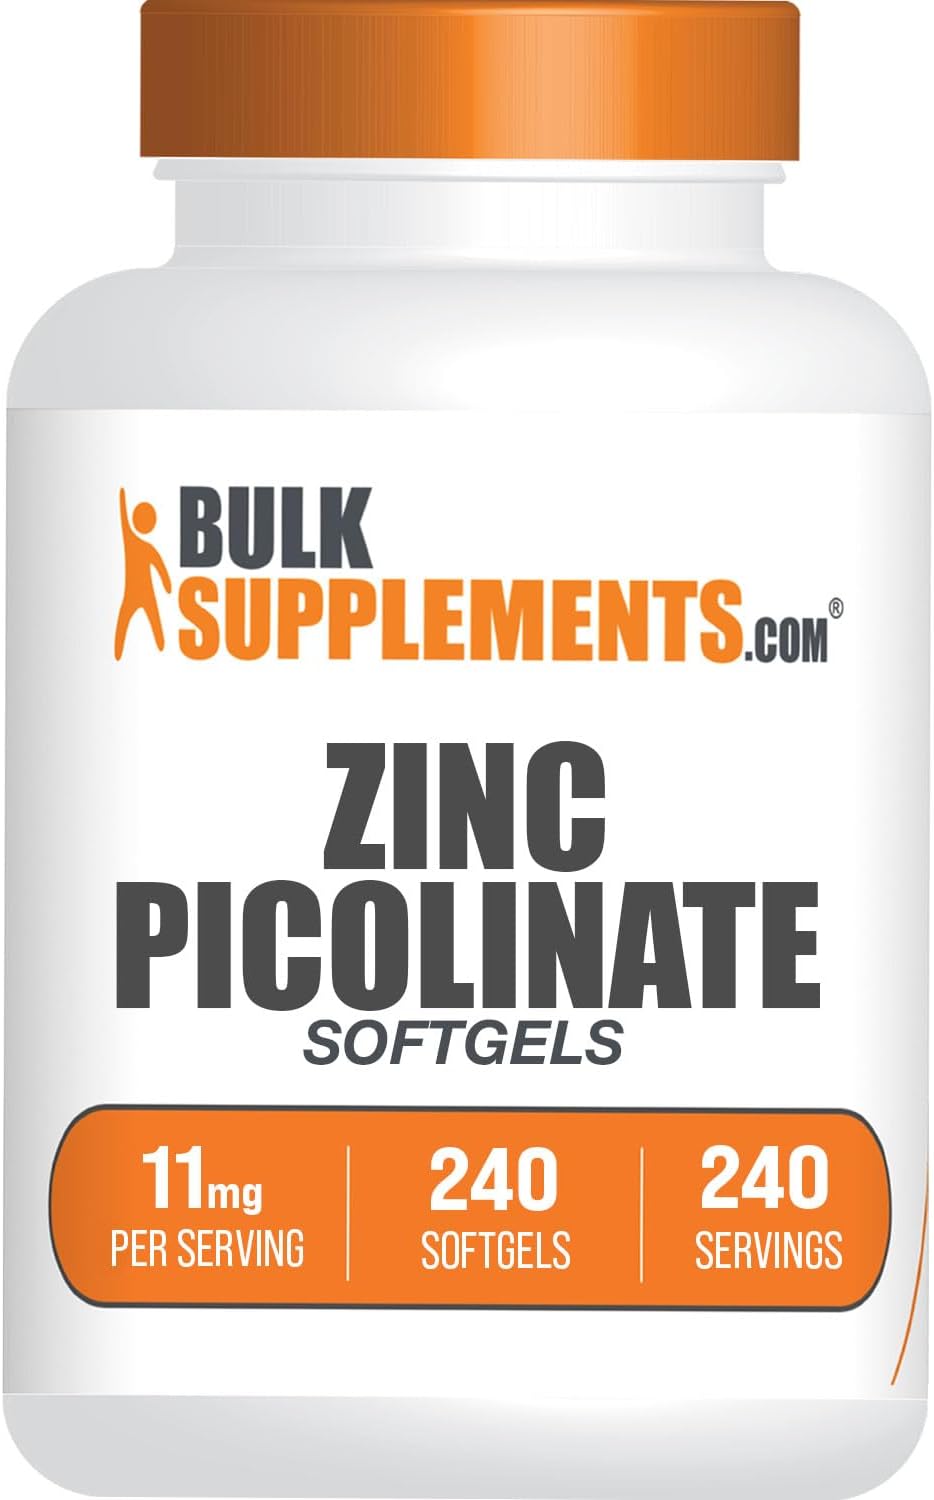 BulkSupplements.com Zinc Picolinate Softgels - Zinc Supplements, Zinc